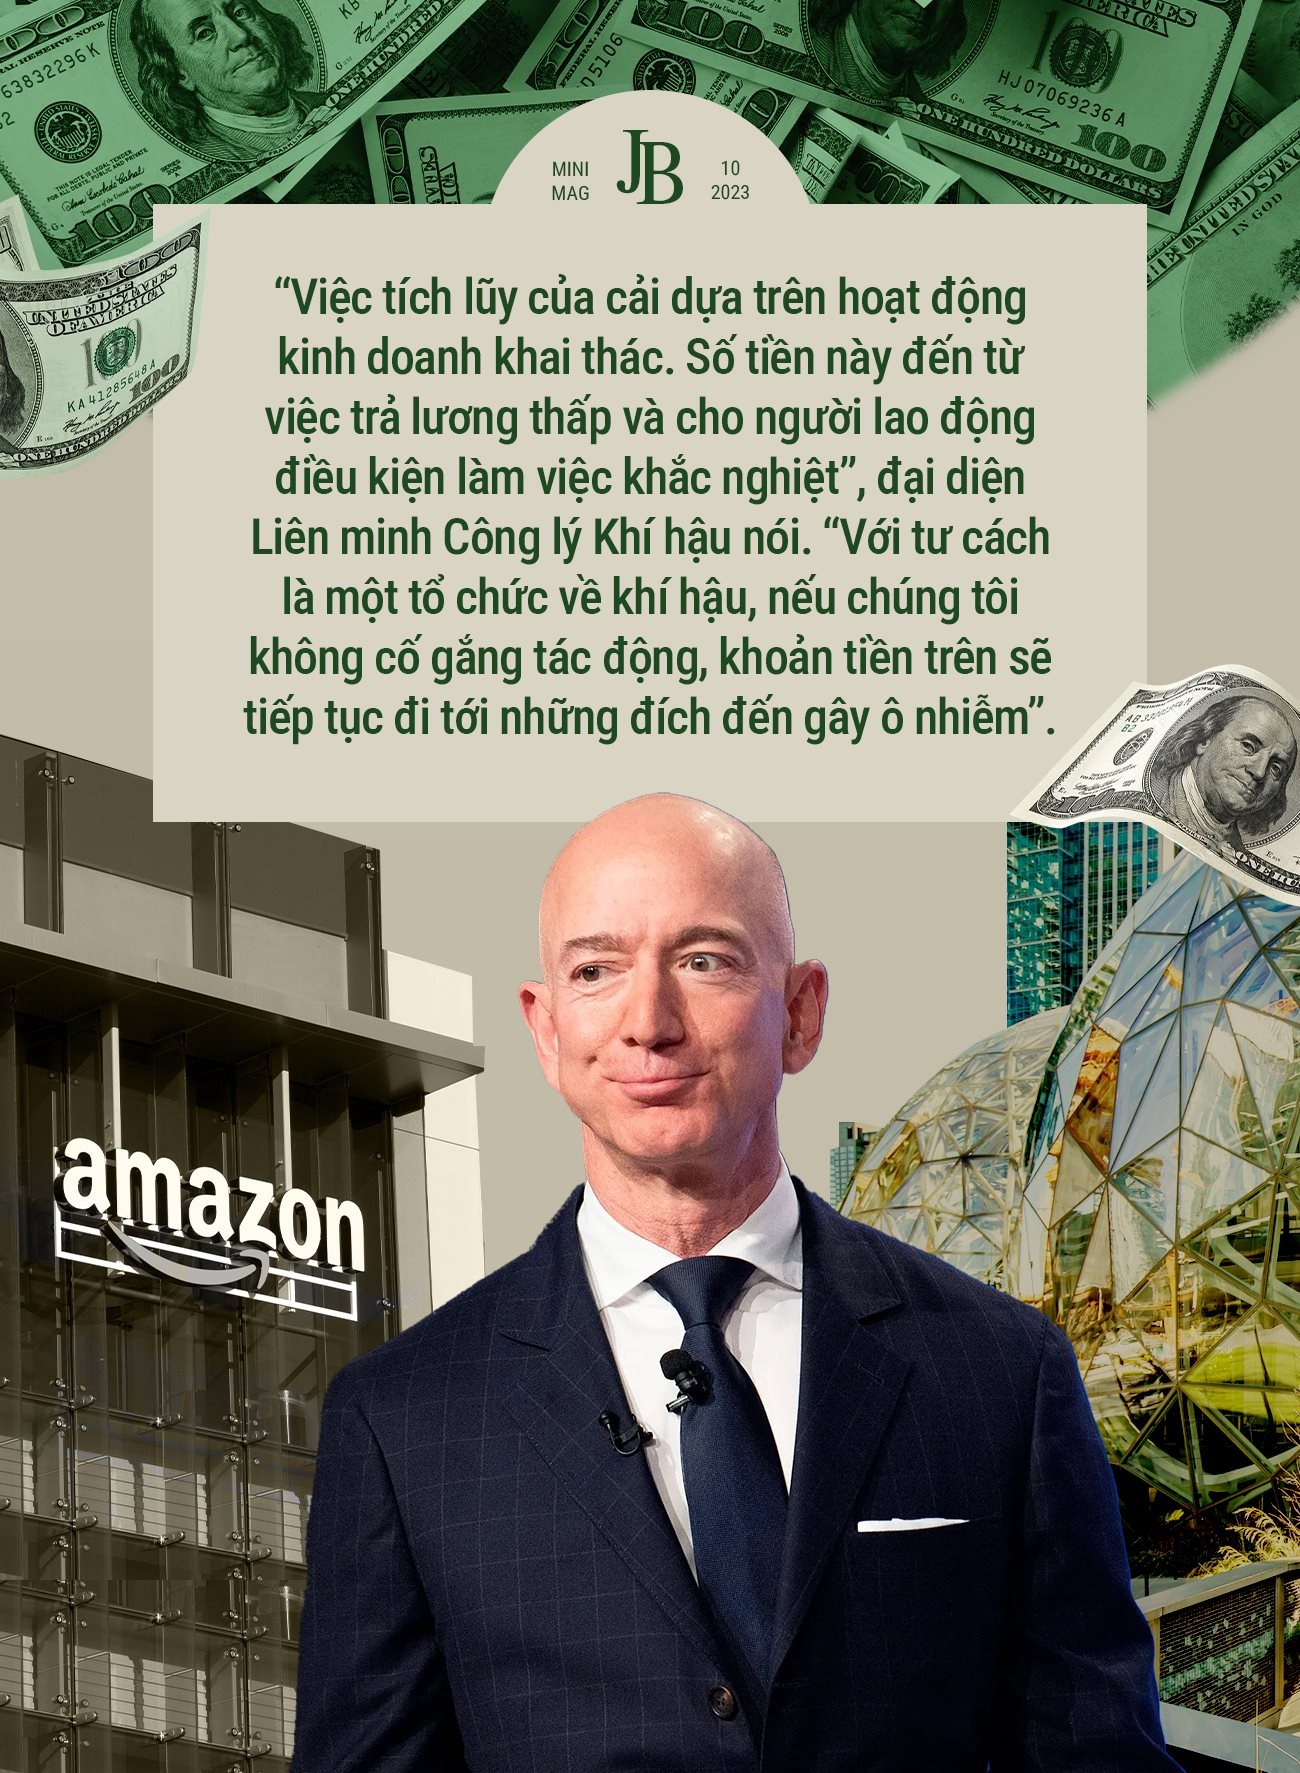 150 tỷ USD tiền từ thiện của Jeff Bezos: Đến từ mồ hôi nước mắt của nhân viên Amazon, cho đi chỉ vì sợ nhận chỉ trích? - Ảnh 5.